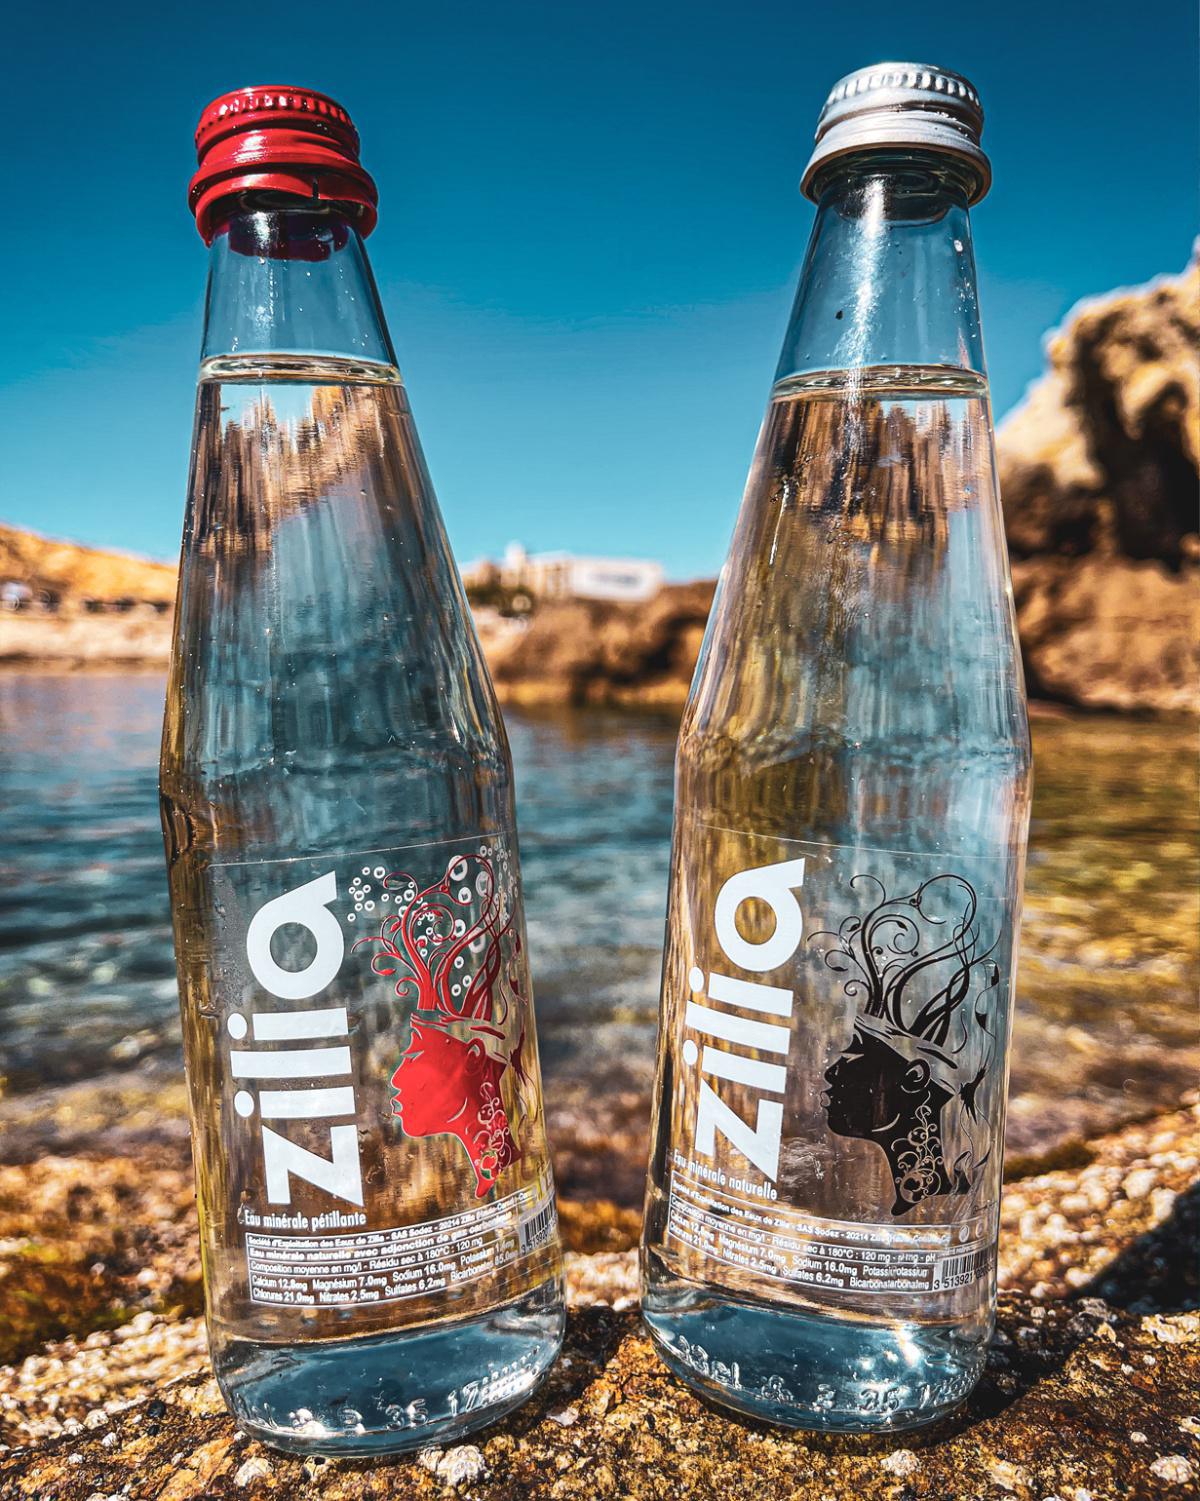 L'eau minérale Corse | Zilia 